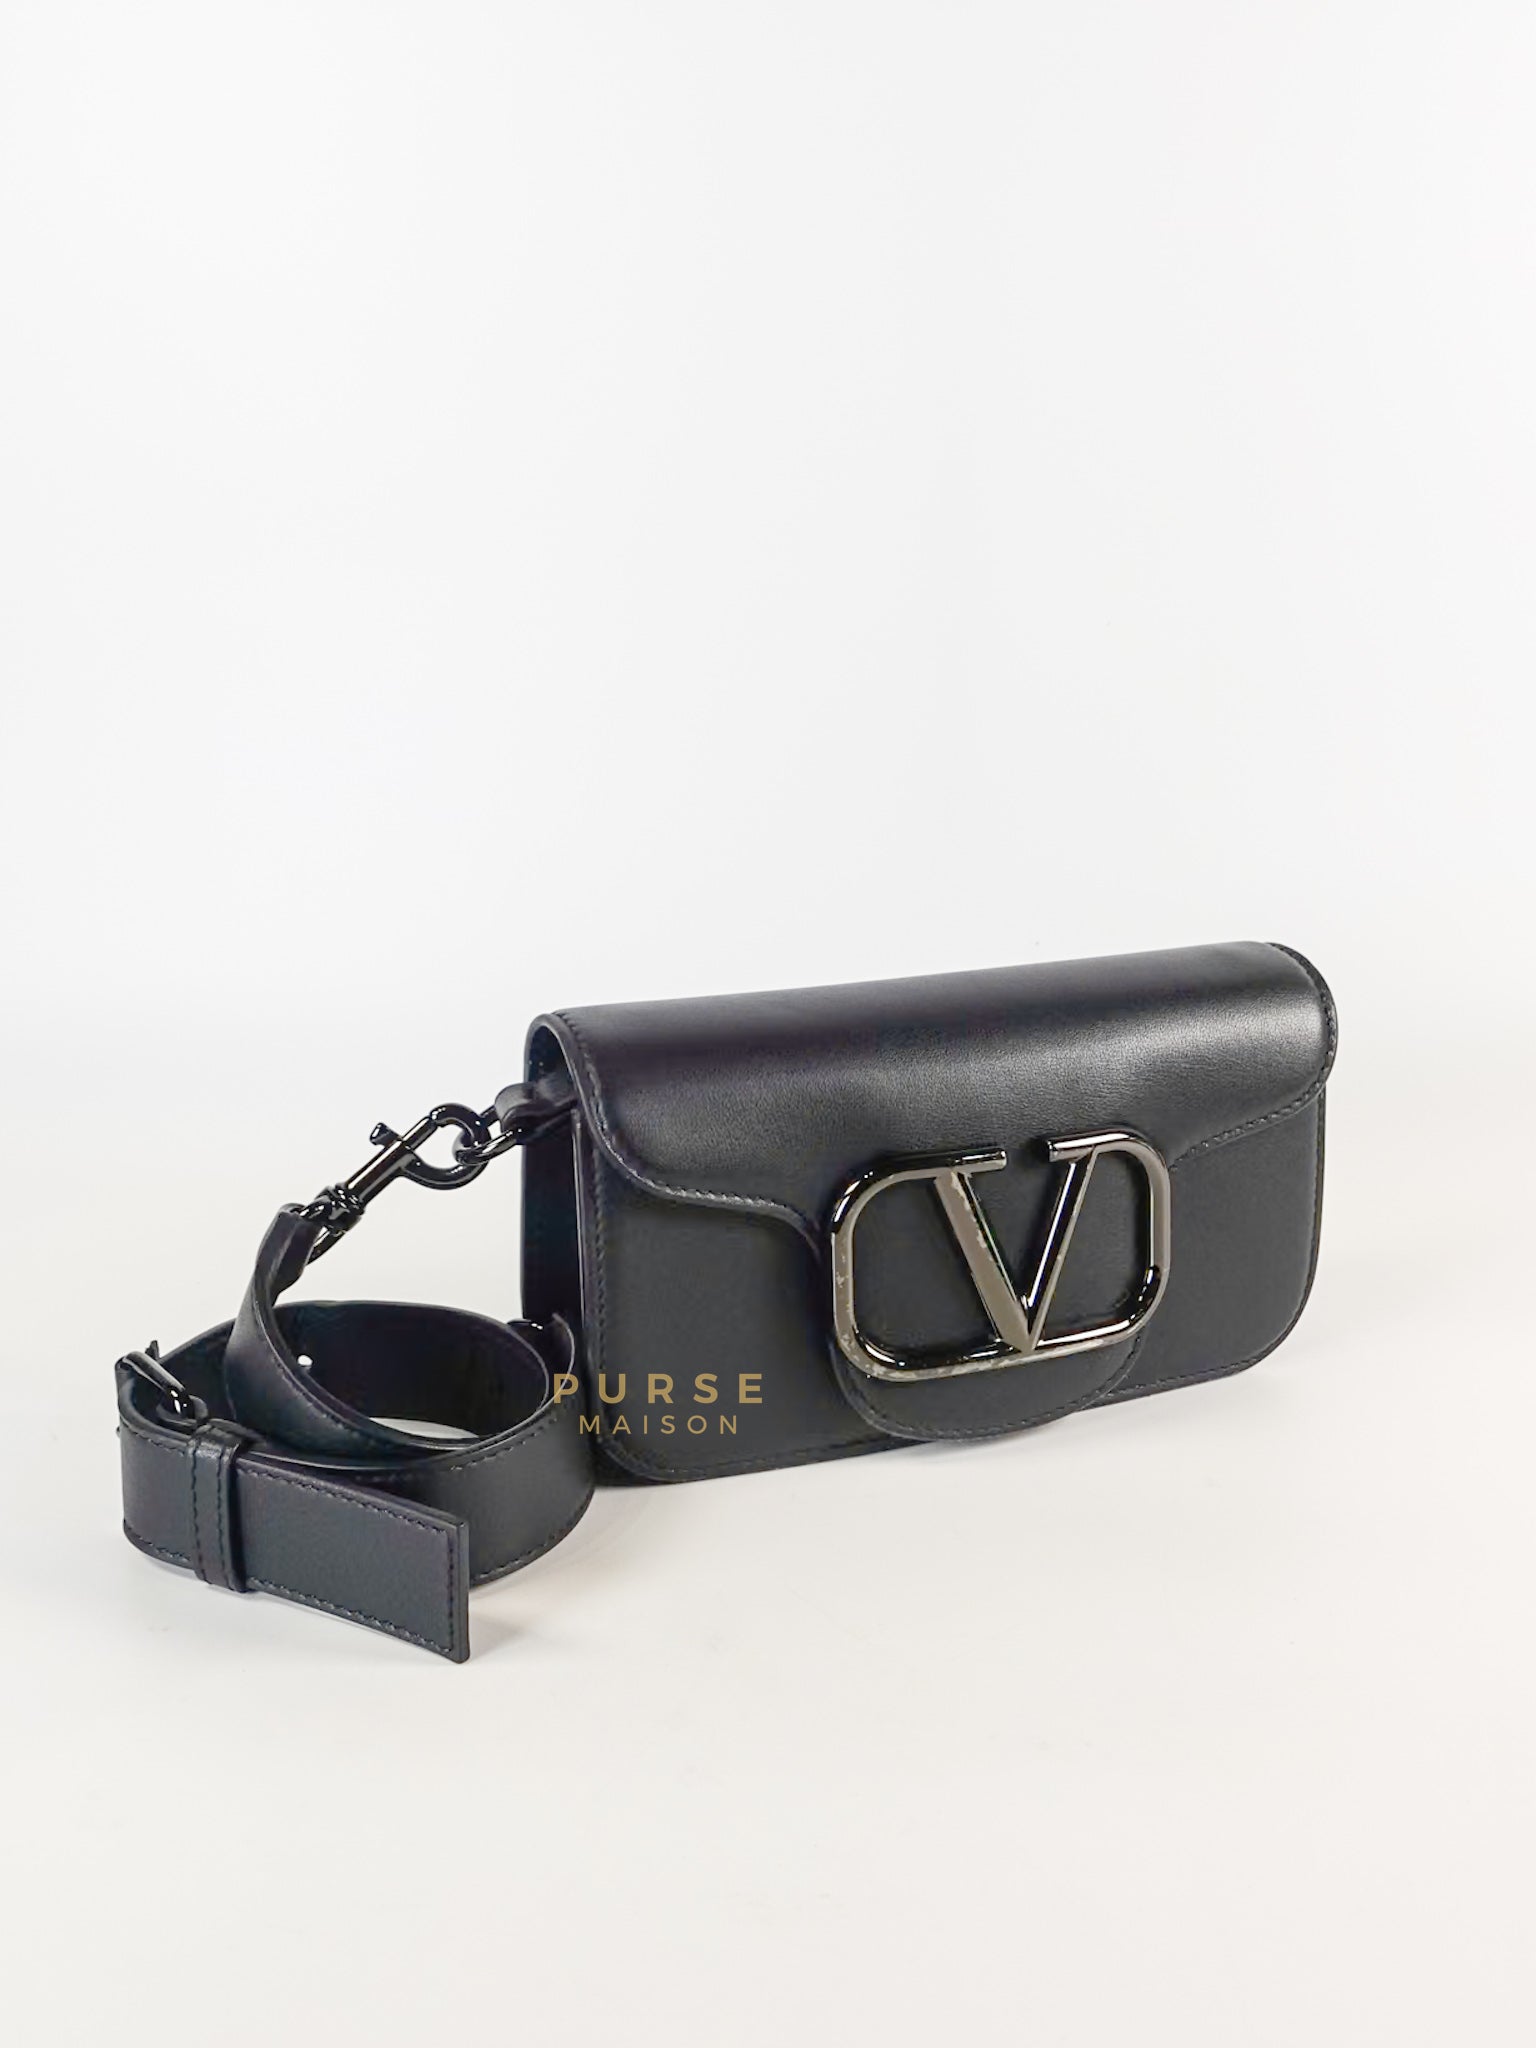 Loco Mini Shoulder Bag in Noir | Purse Maison Luxury Bags Shop